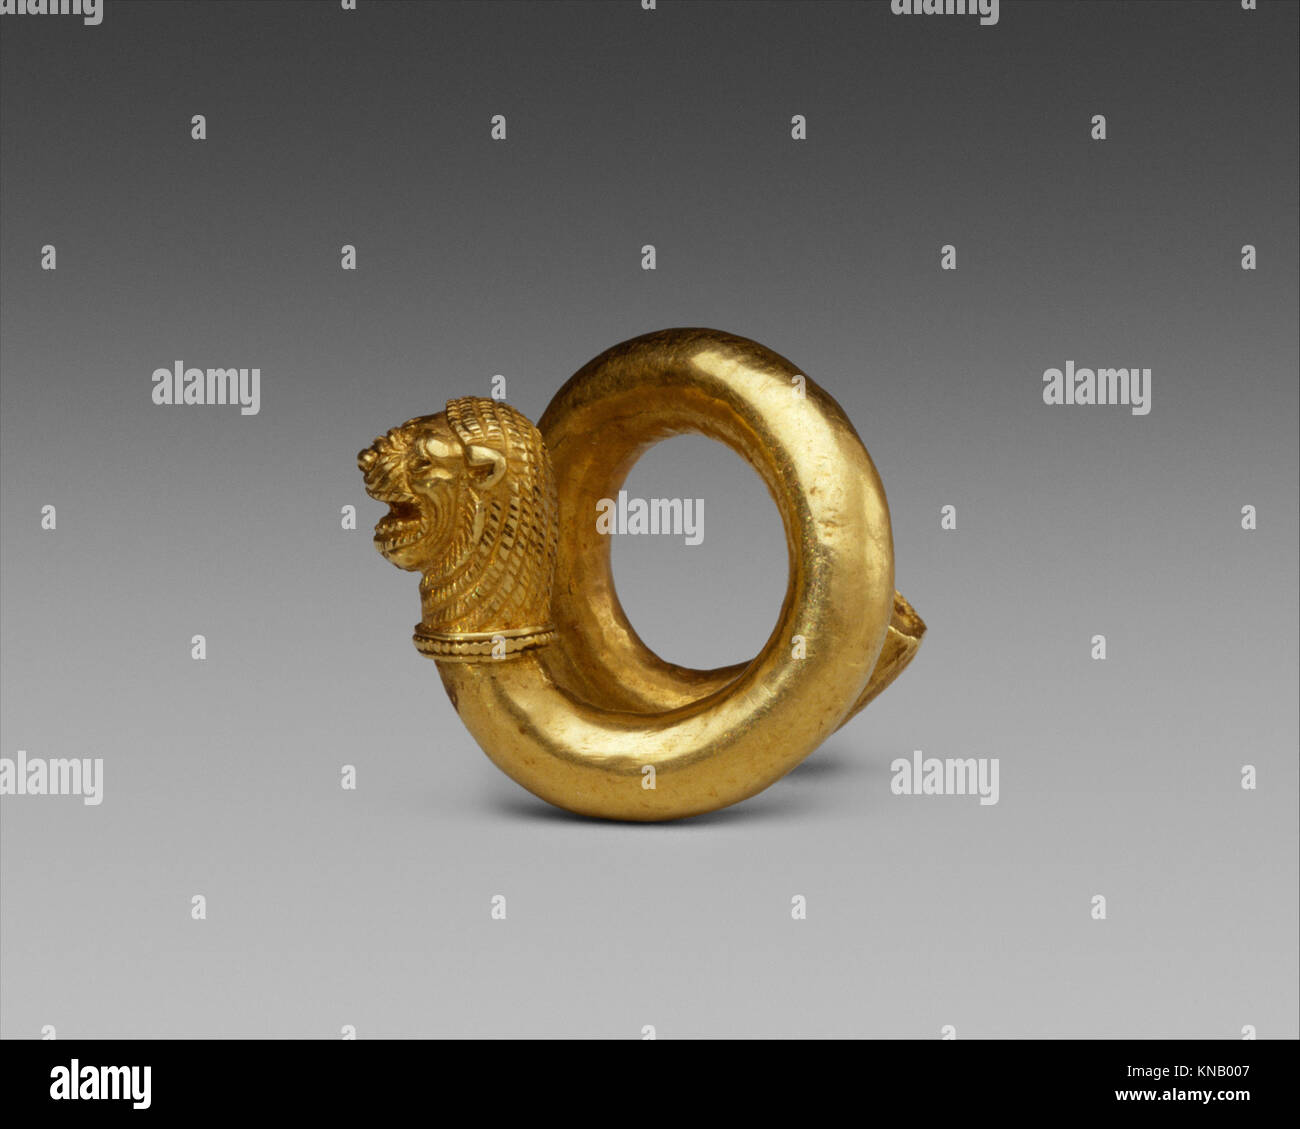 Spirale d'or et d'alliages de cuivre avec lion-head terminal rencontré DT328184 242800 Banque D'Images